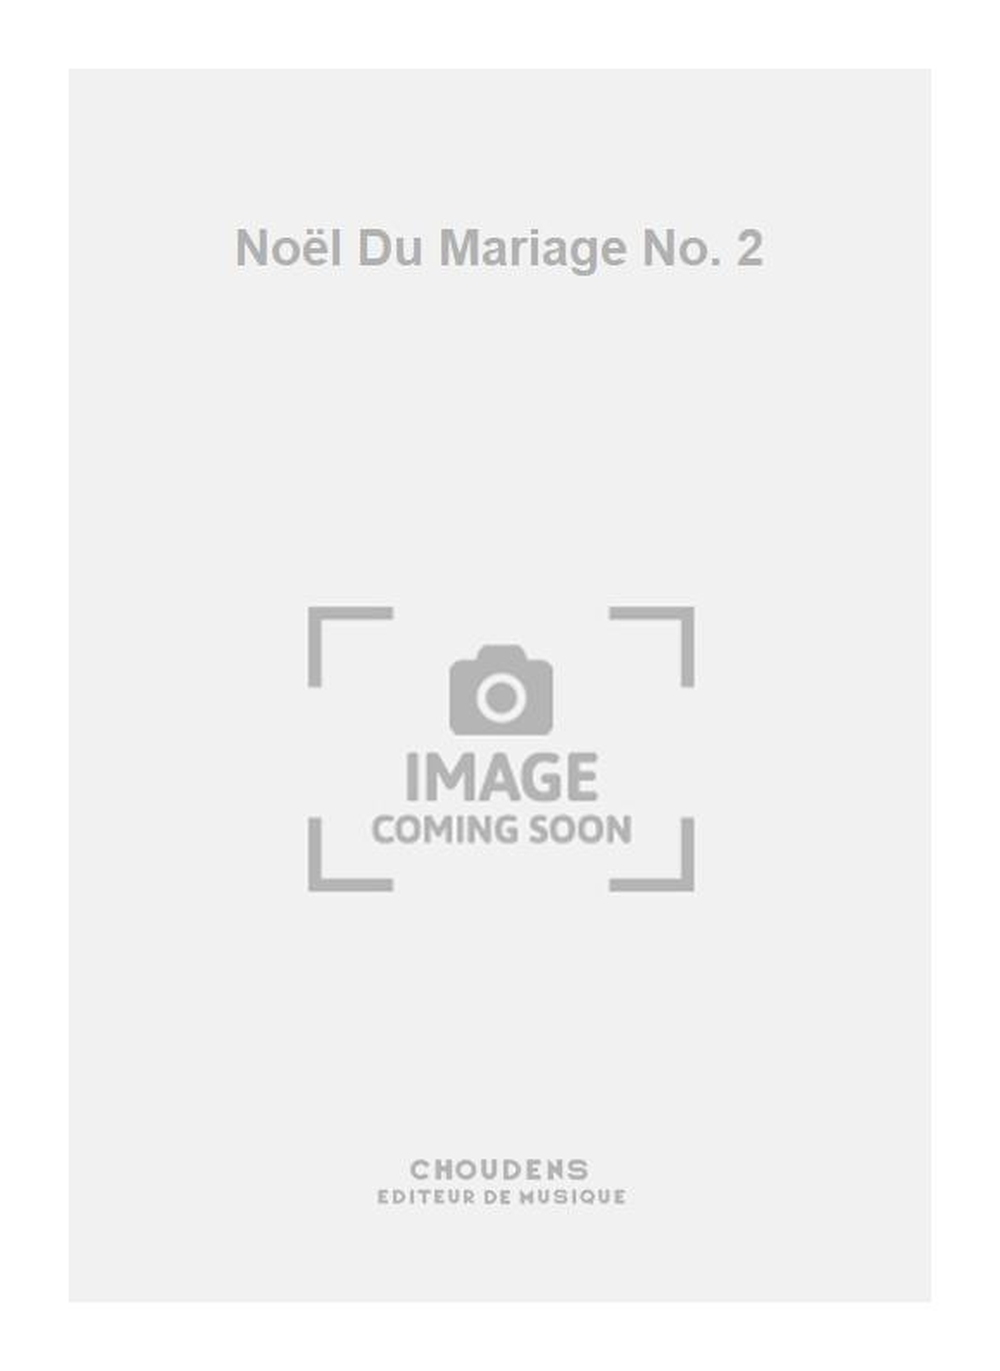 Nol Du Mariage No. 2